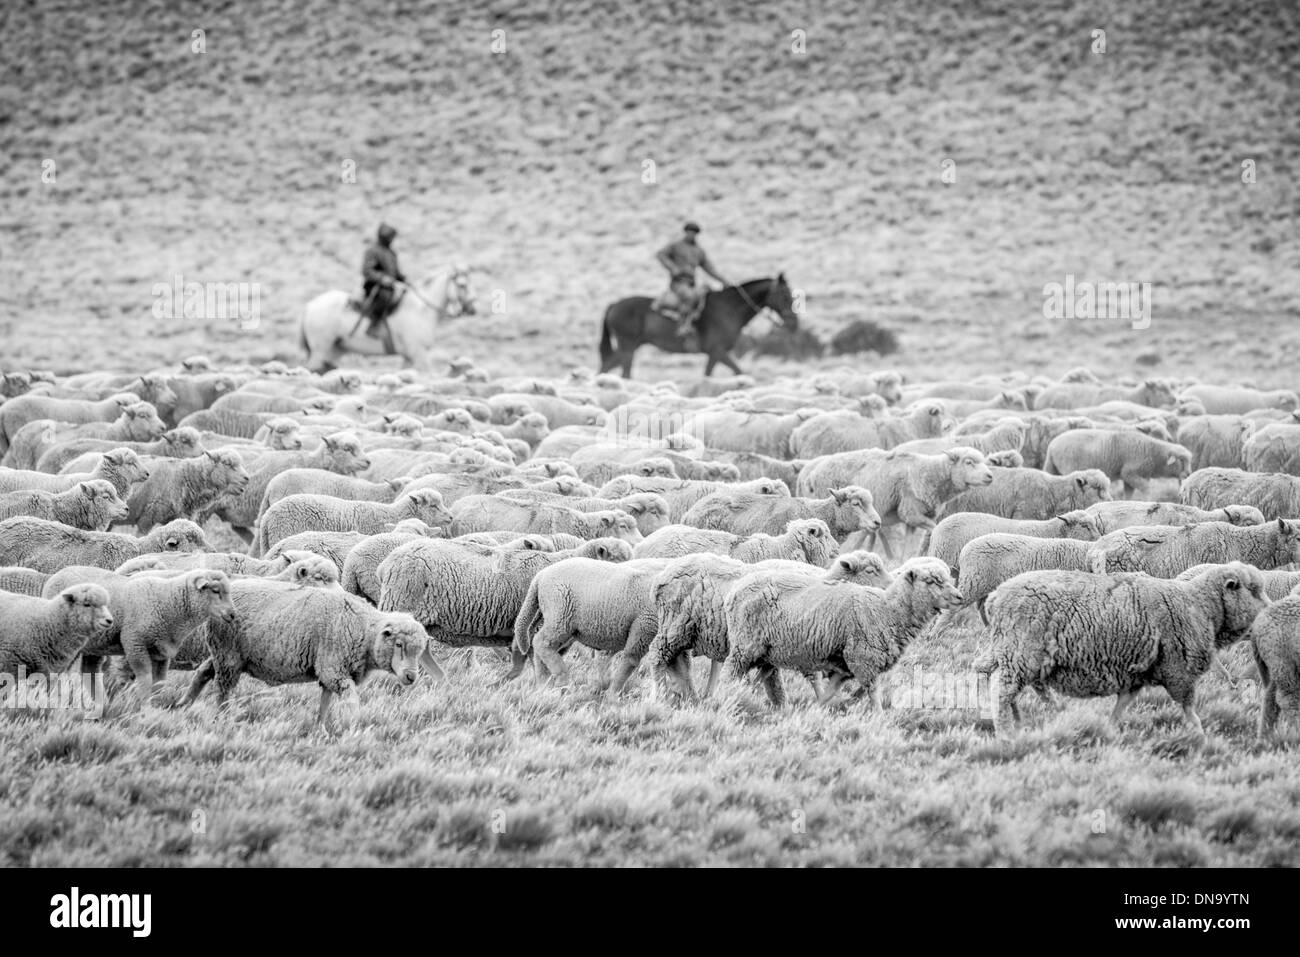 Gauchos on Horseback, Argentina Stock Photo